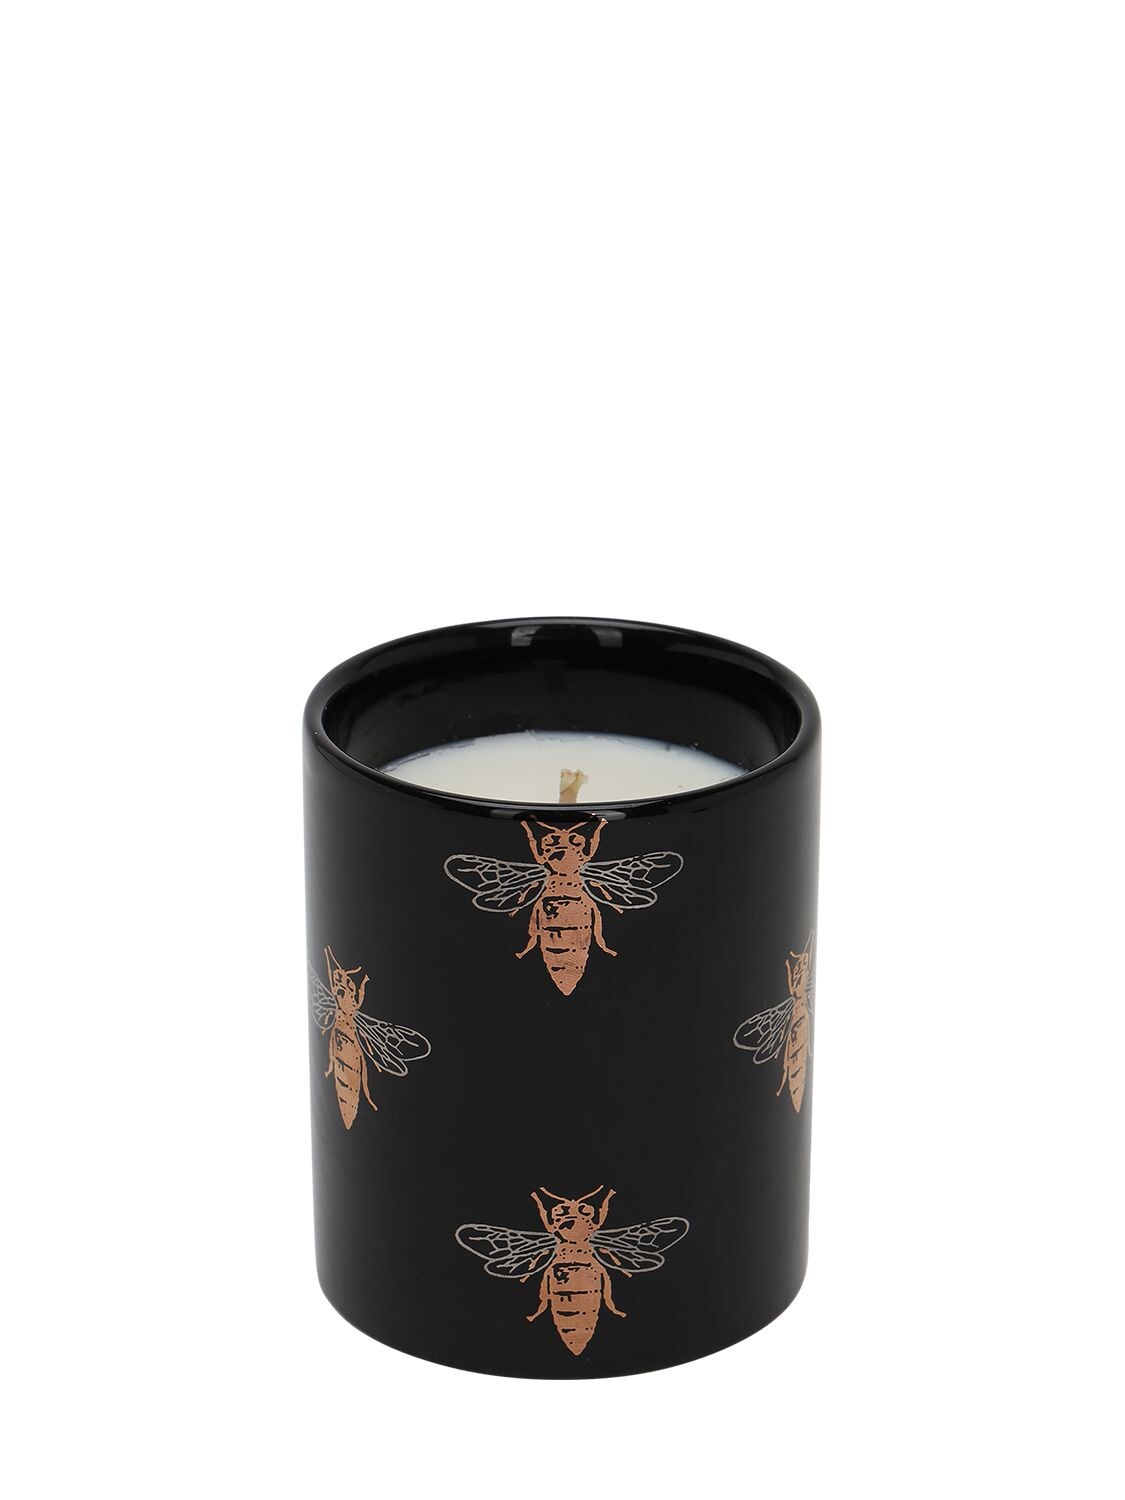 Casacarta 小号“bee”单条芯陶瓷香氛蜡烛 In Black,gold